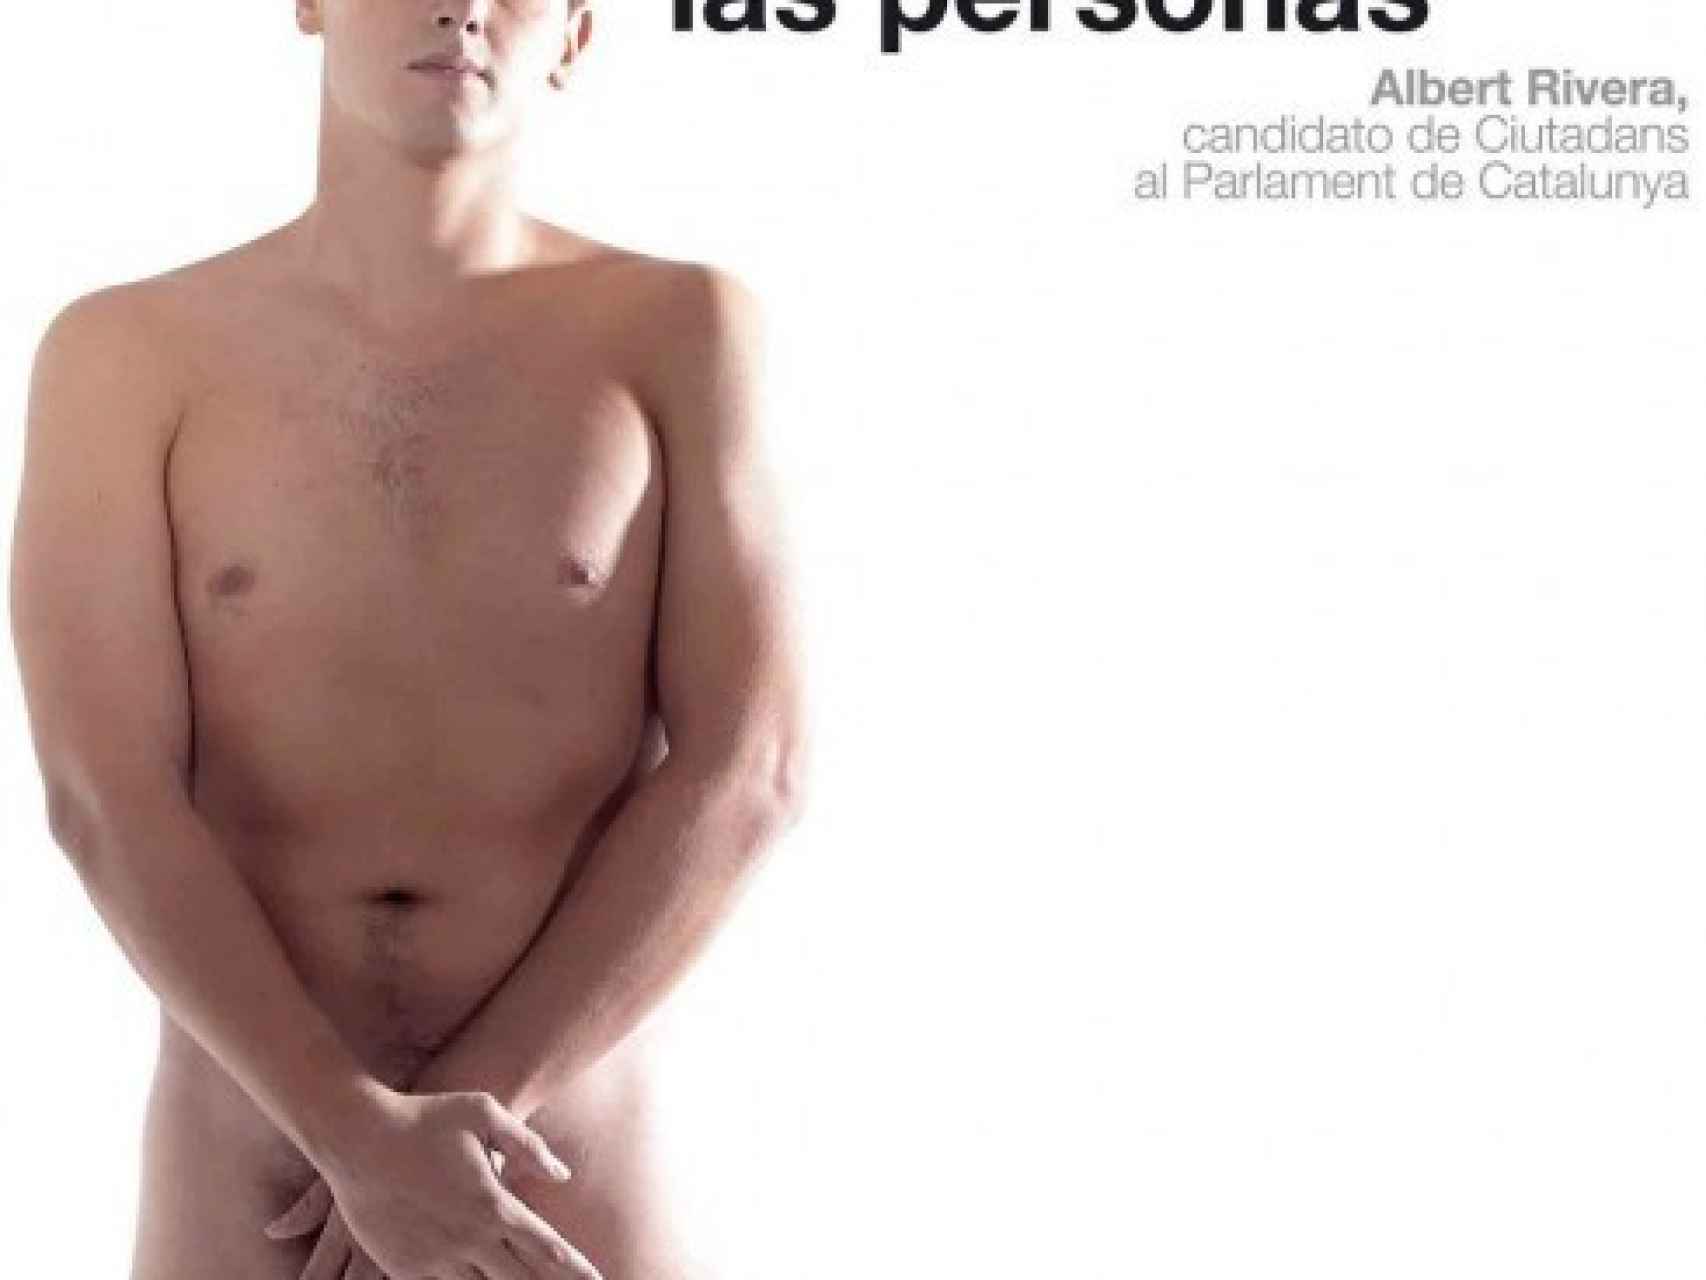 Albert Rivera ha mejorado mucho desde que posó desnudo para el cartel promocional